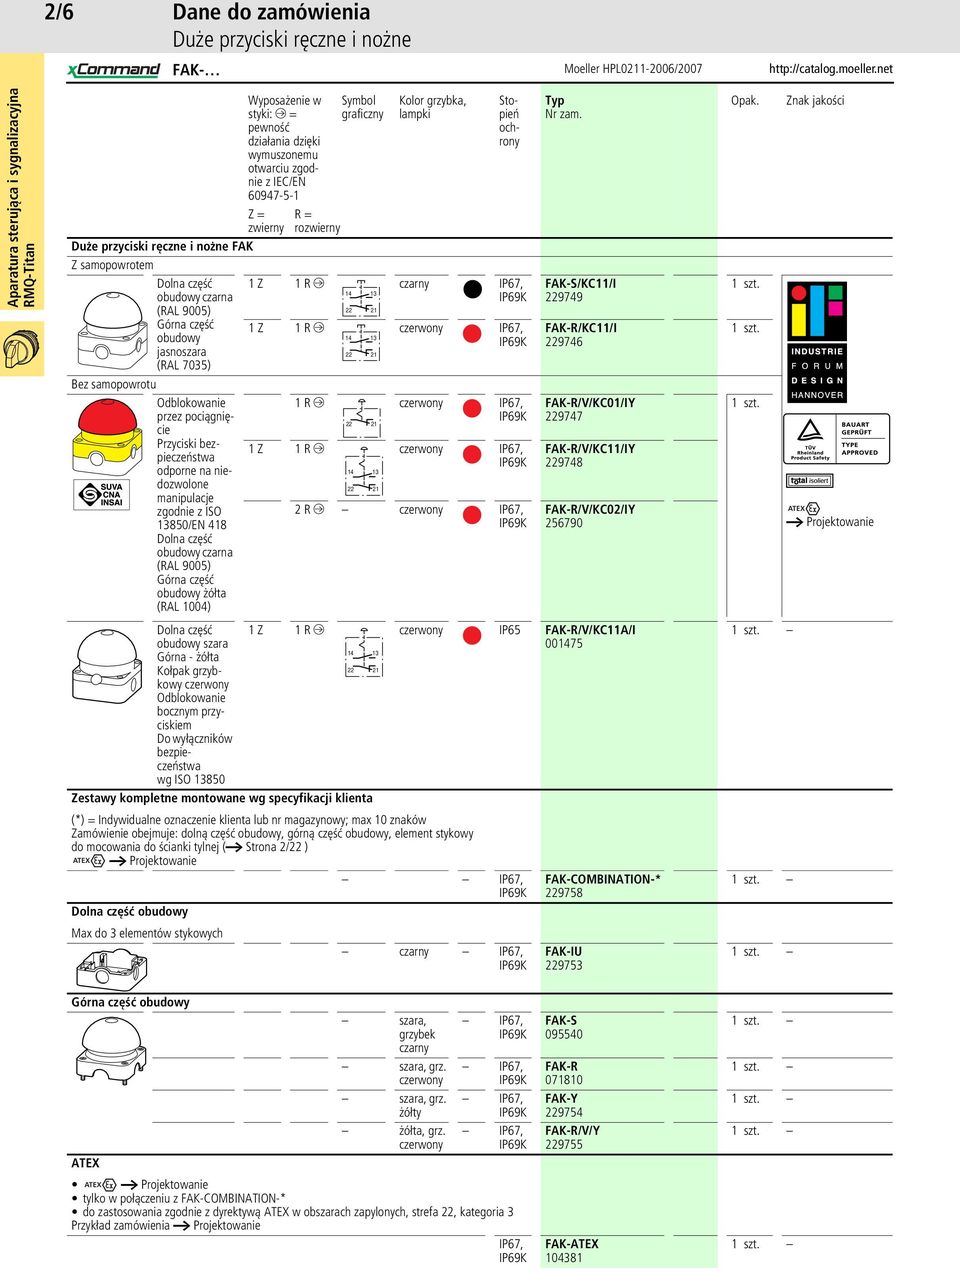 niedozwolone manipulacje zgodnie z ISO 13850/EN 418 Dolna część obudowy czarna (RAL 9005) Górna część obudowy żółta (RAL 1004) R = rozwierny Symbol graficzny Kolor grzybka, lampki Stopień ochrony 1 Z